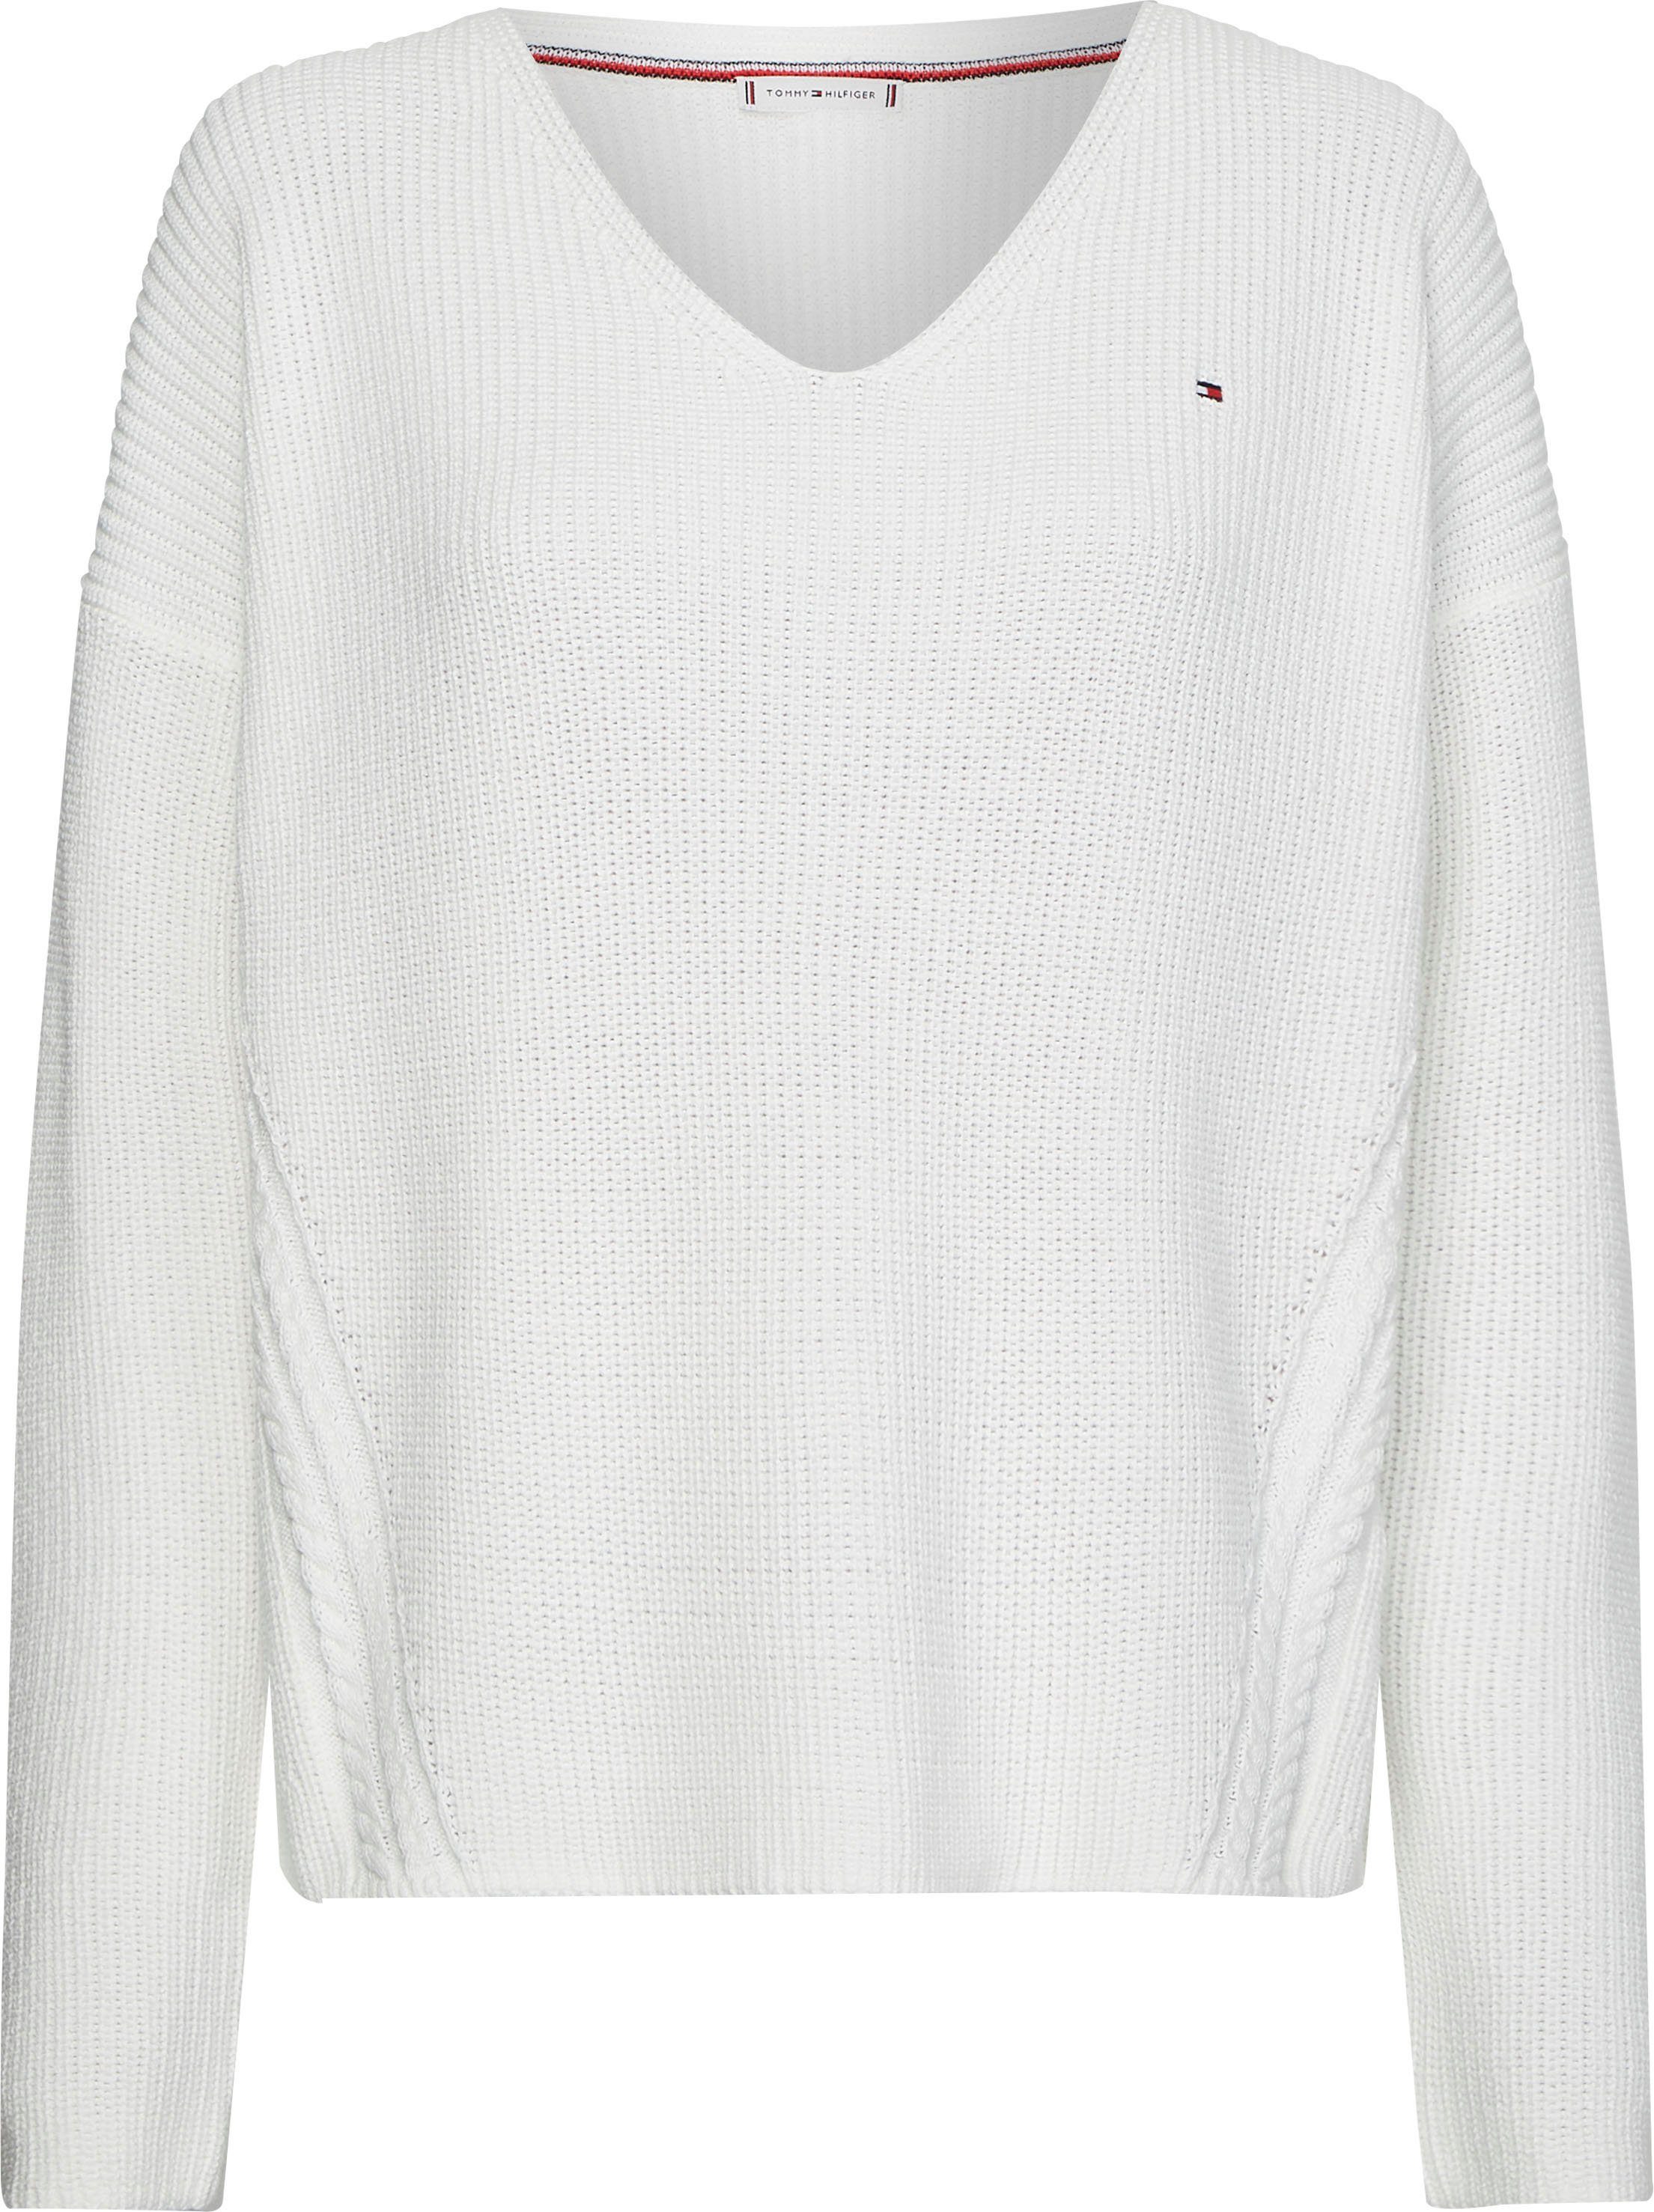 Tommy Hilfiger Pullover online kaufen | OTTO